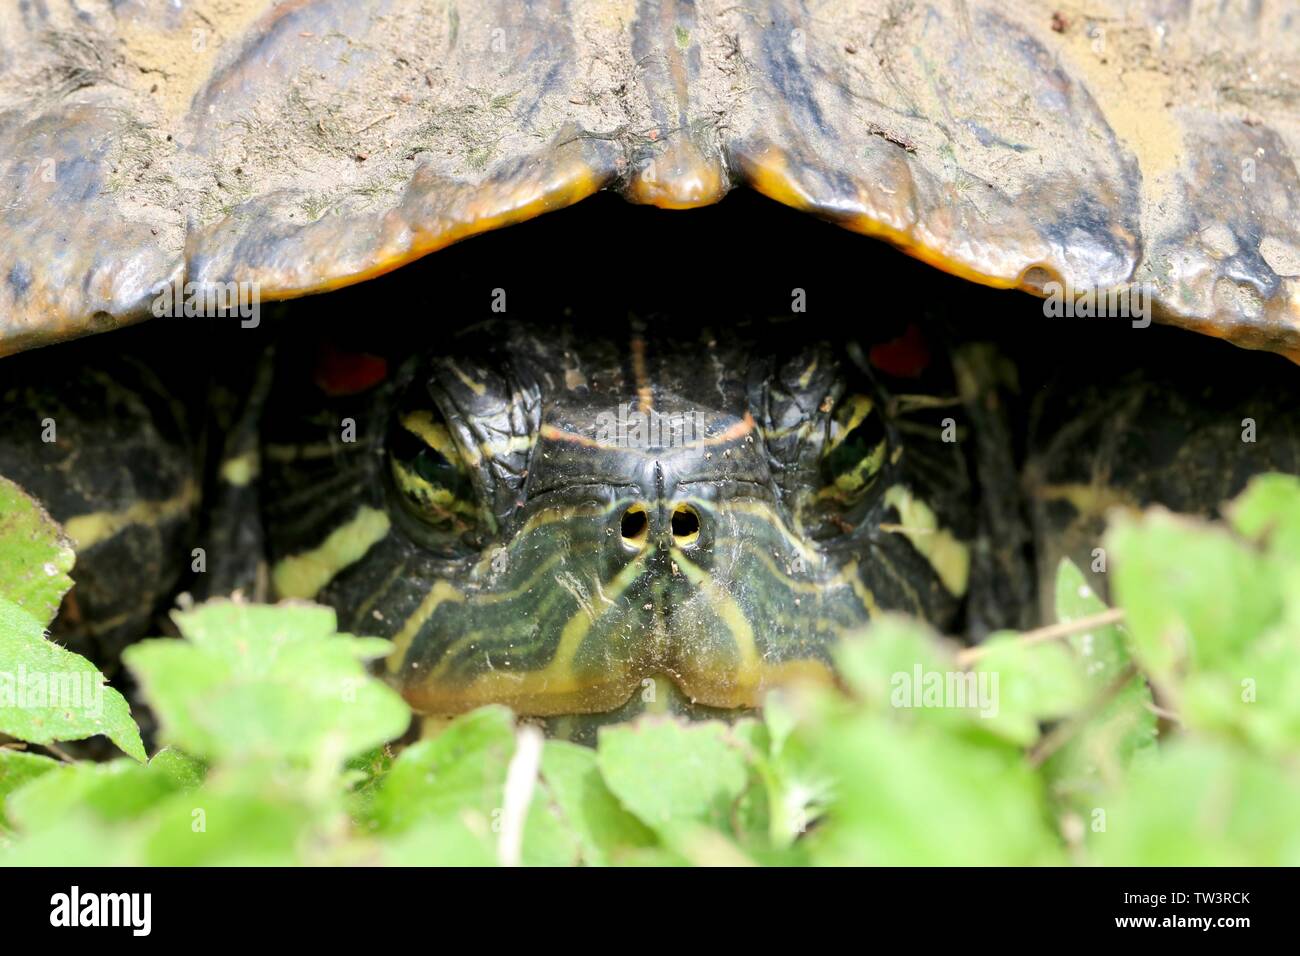 Plan Macro sur le visage d'une tortue se cache dans sa coquille Banque D'Images